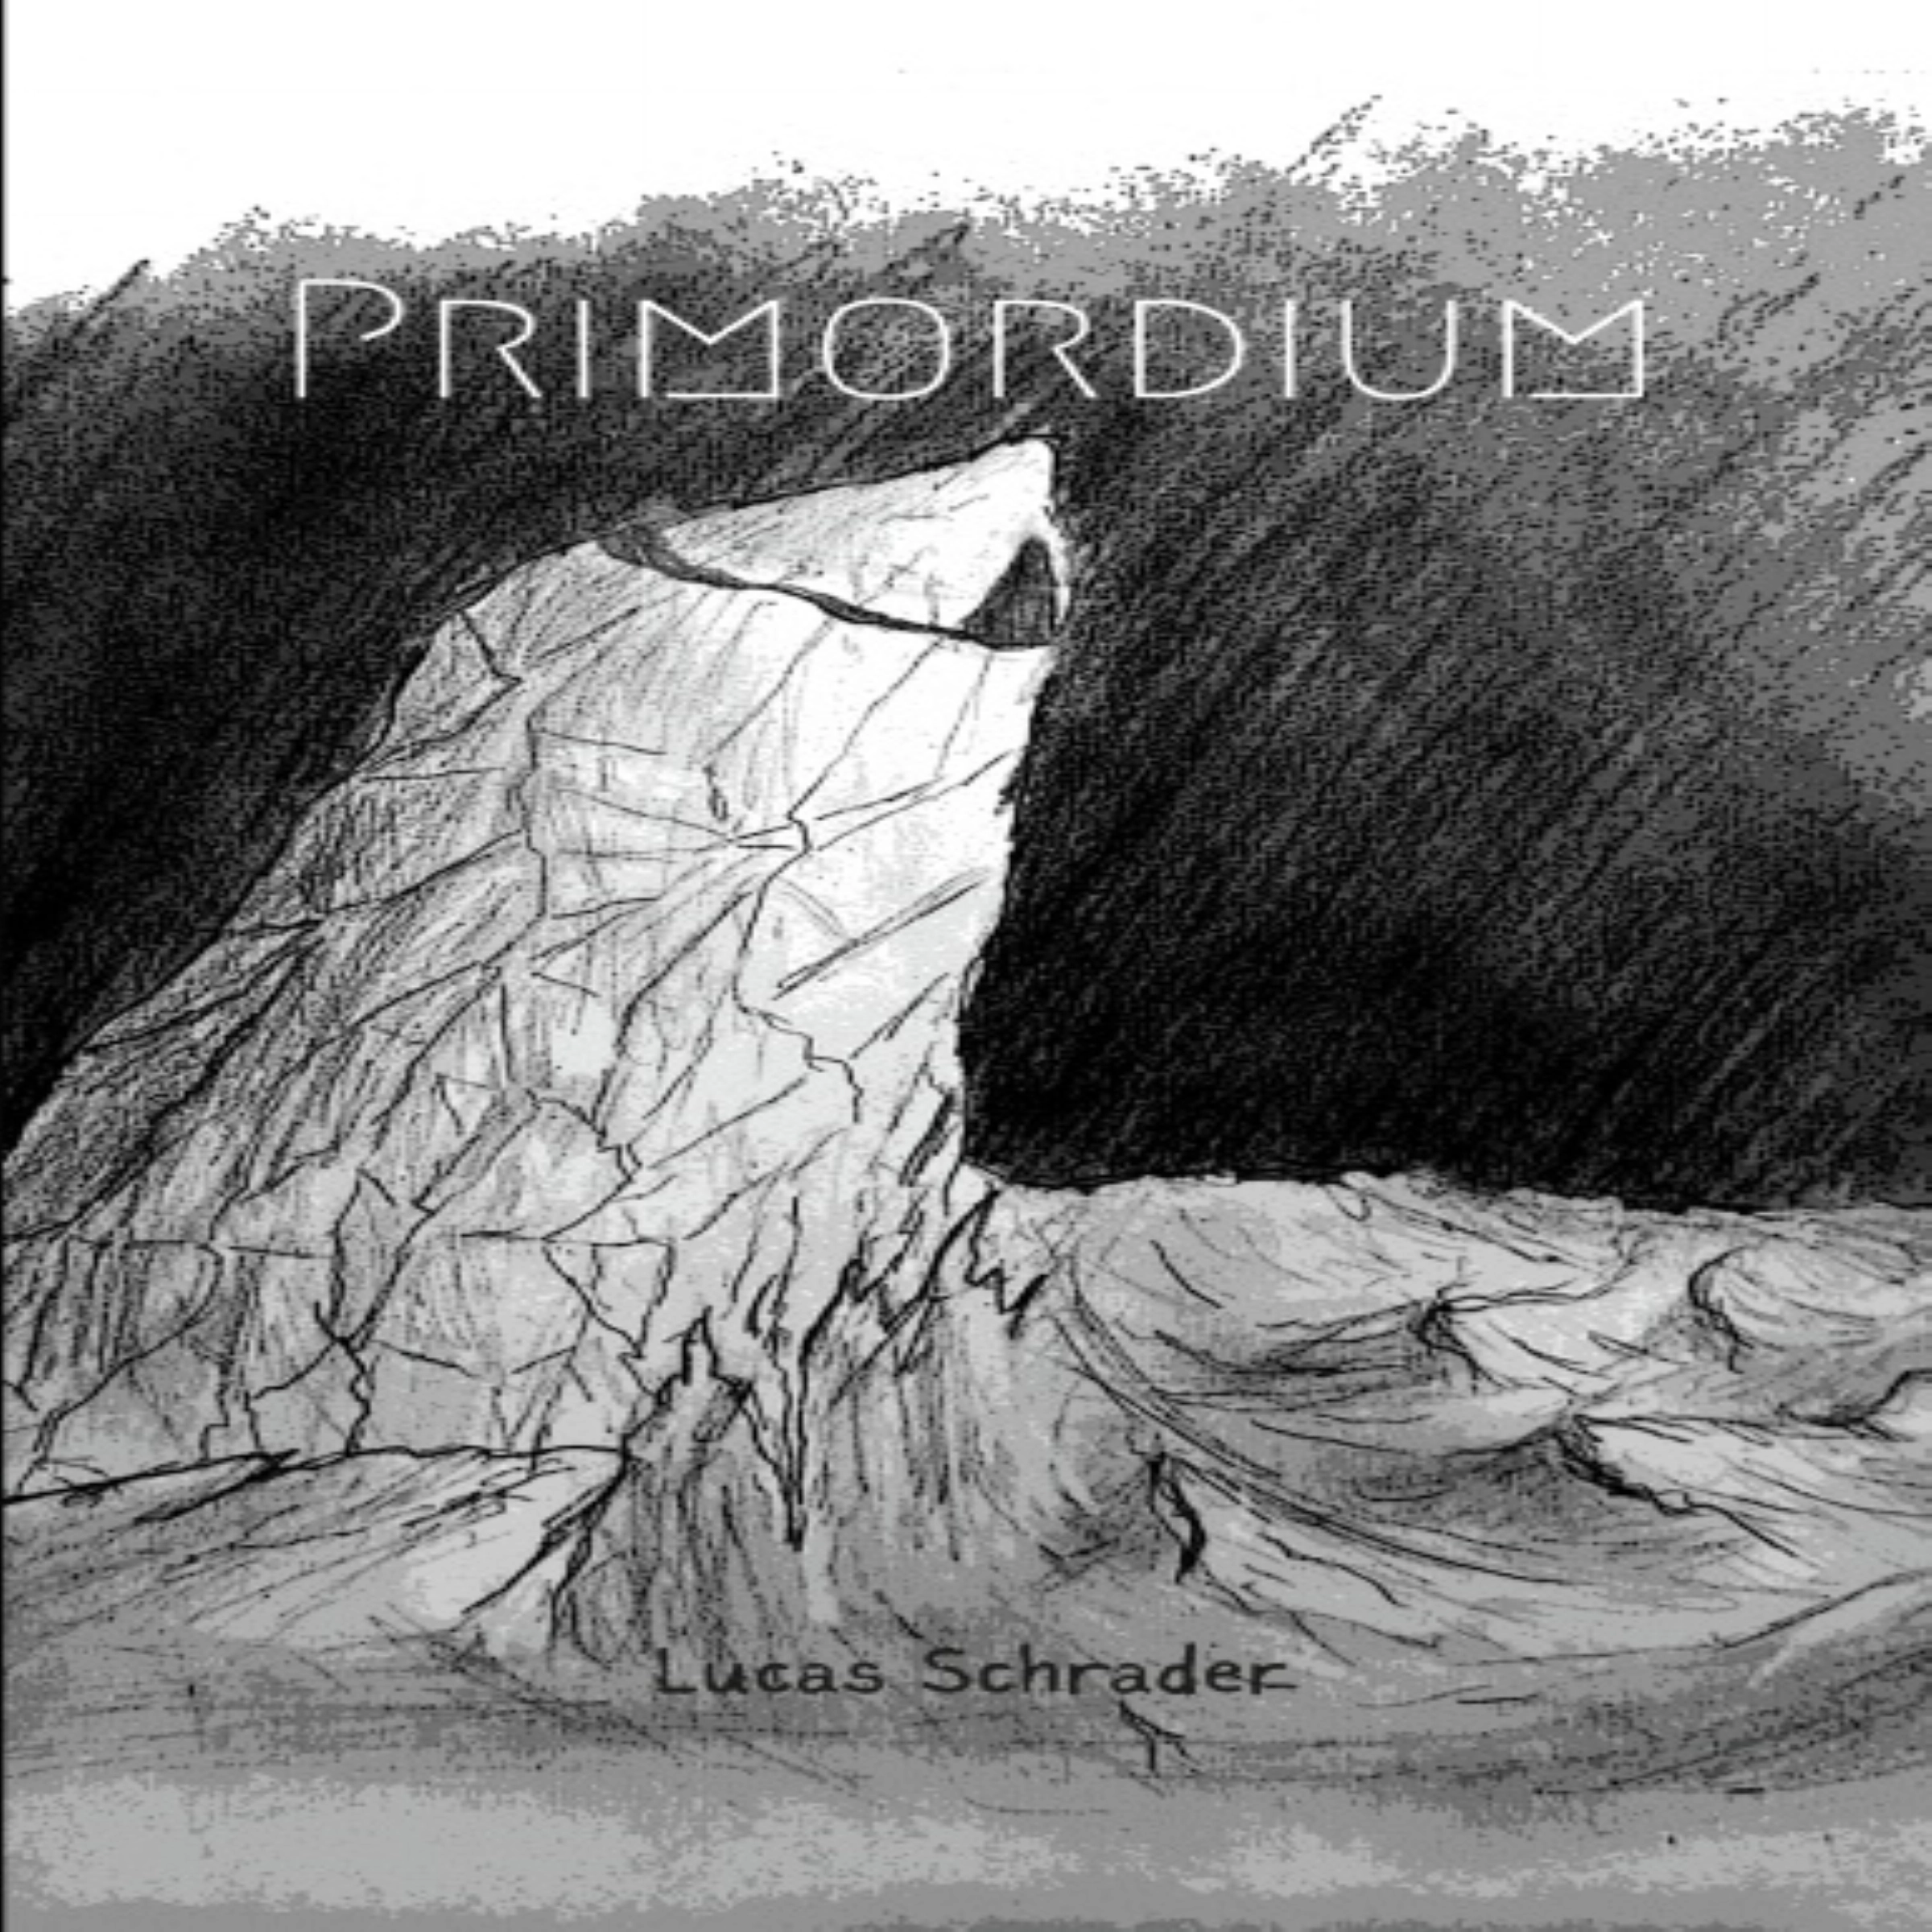 Primordium by Lucas Schrader Audiobook